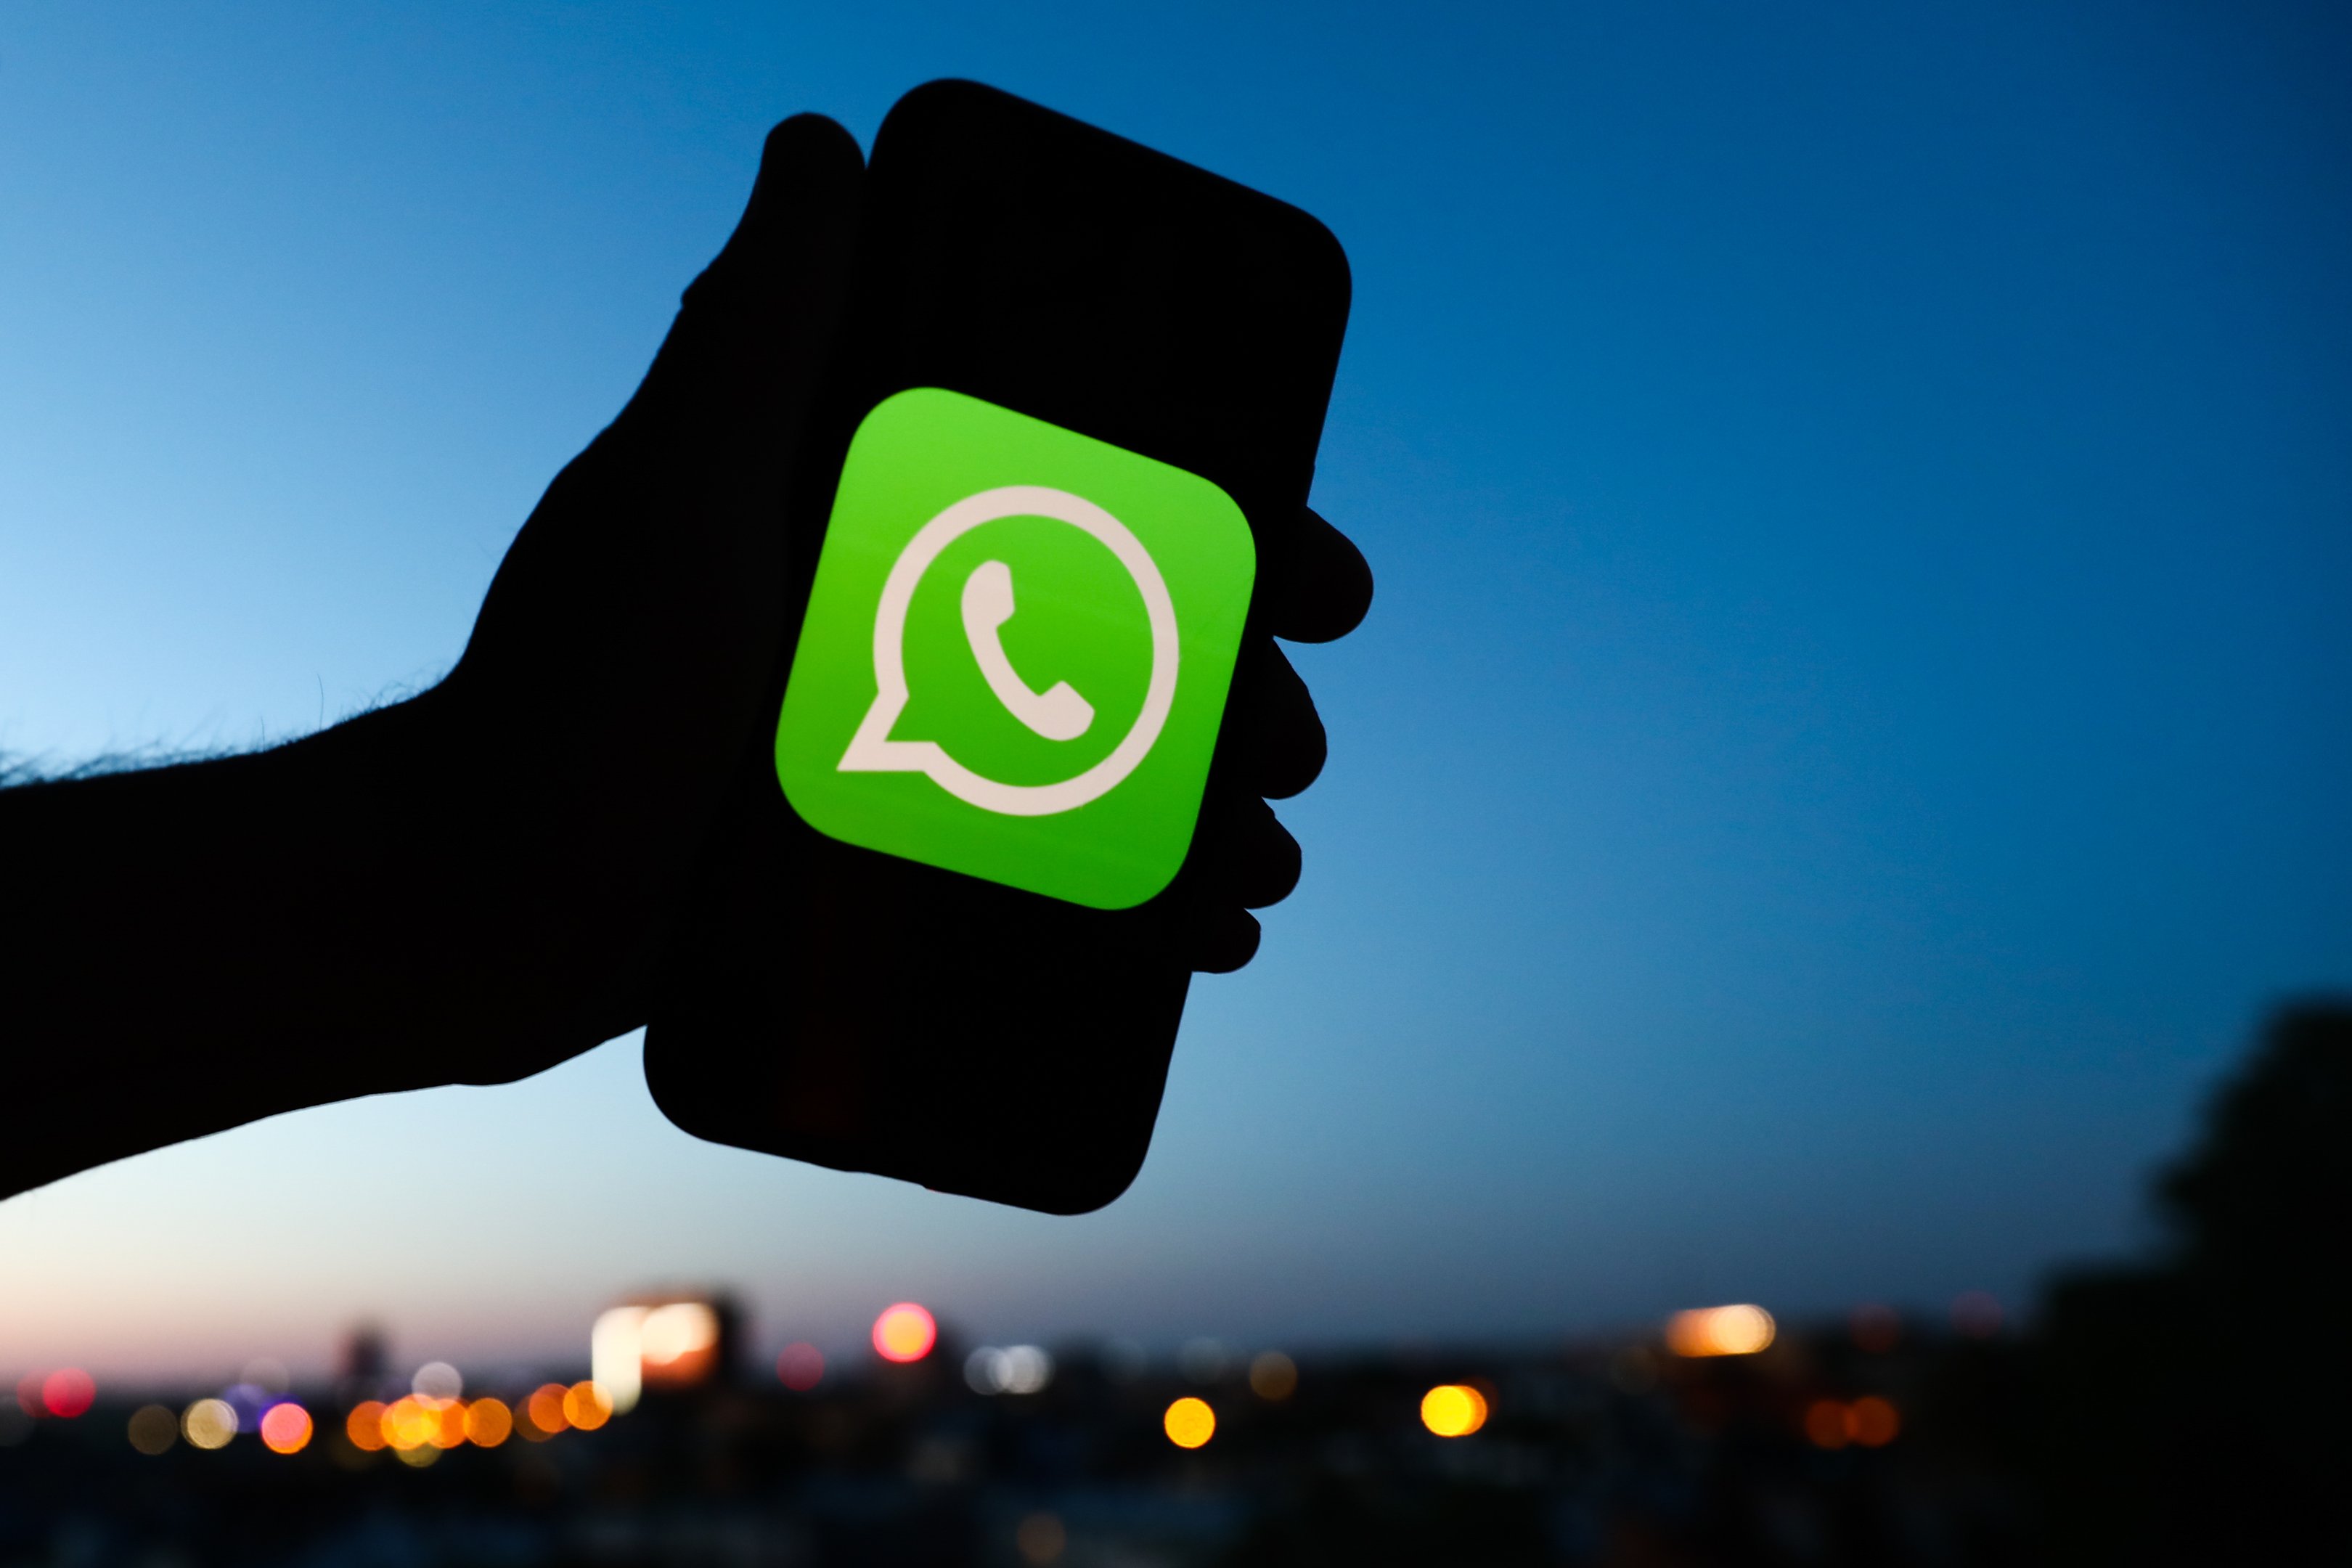  WhatsApp- သင့်အတွေ့အကြုံကို ပြောင်းလဲစေမည့် လျှို့ဝှက်အင်္ဂါရပ် ၃ ခု။